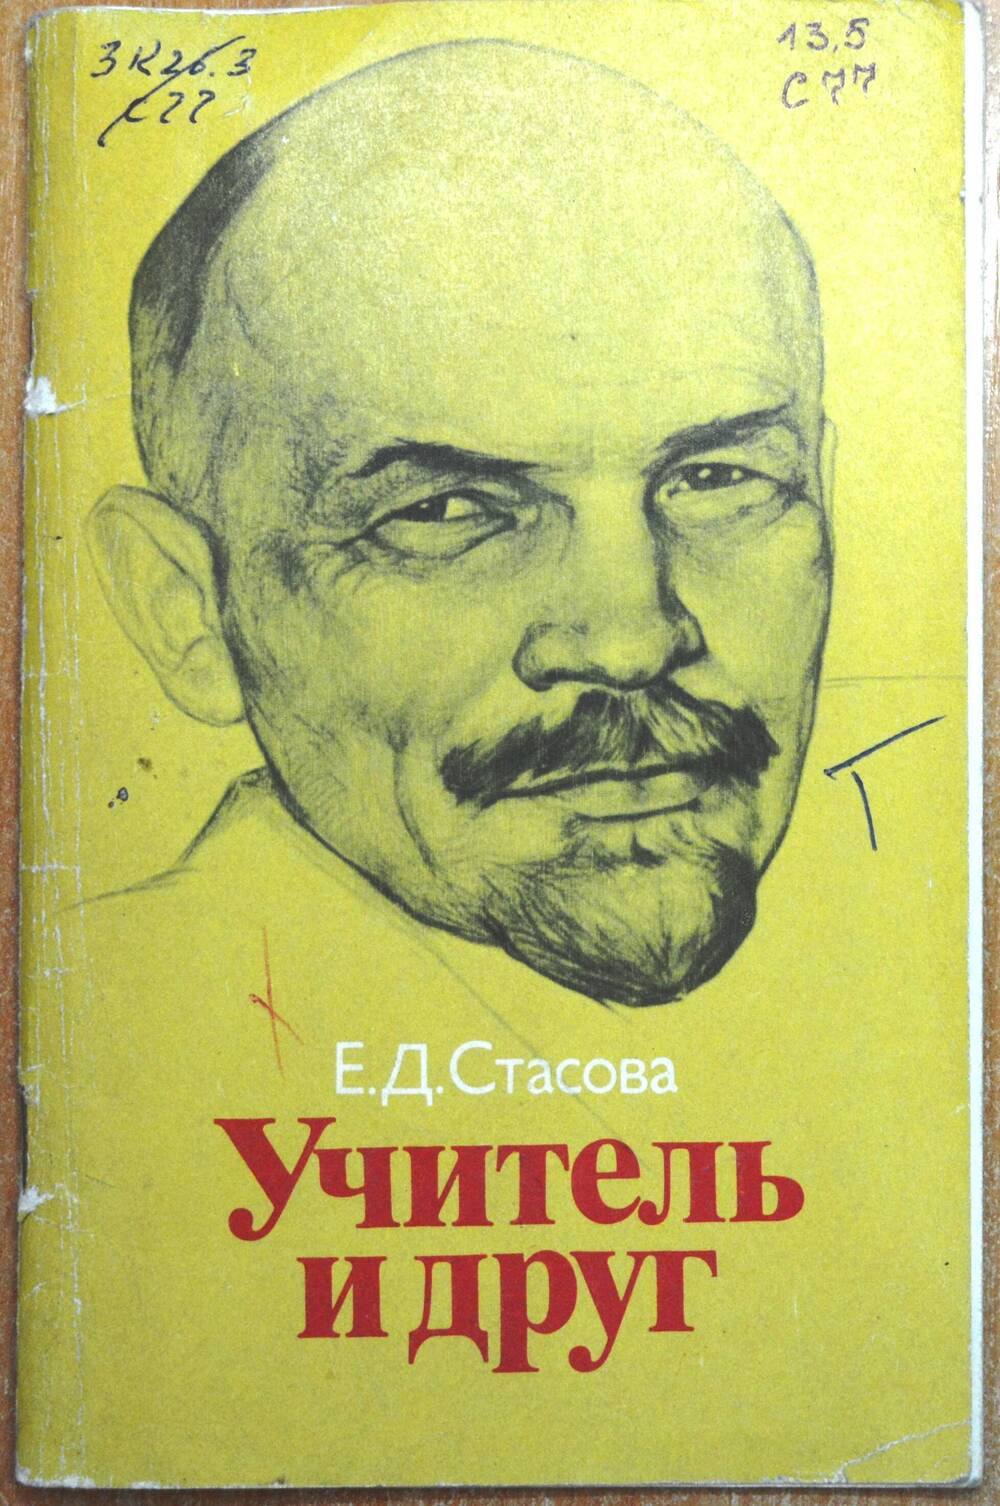 Книга – «Учитель и друг», автор – Е.Д. Стасова.